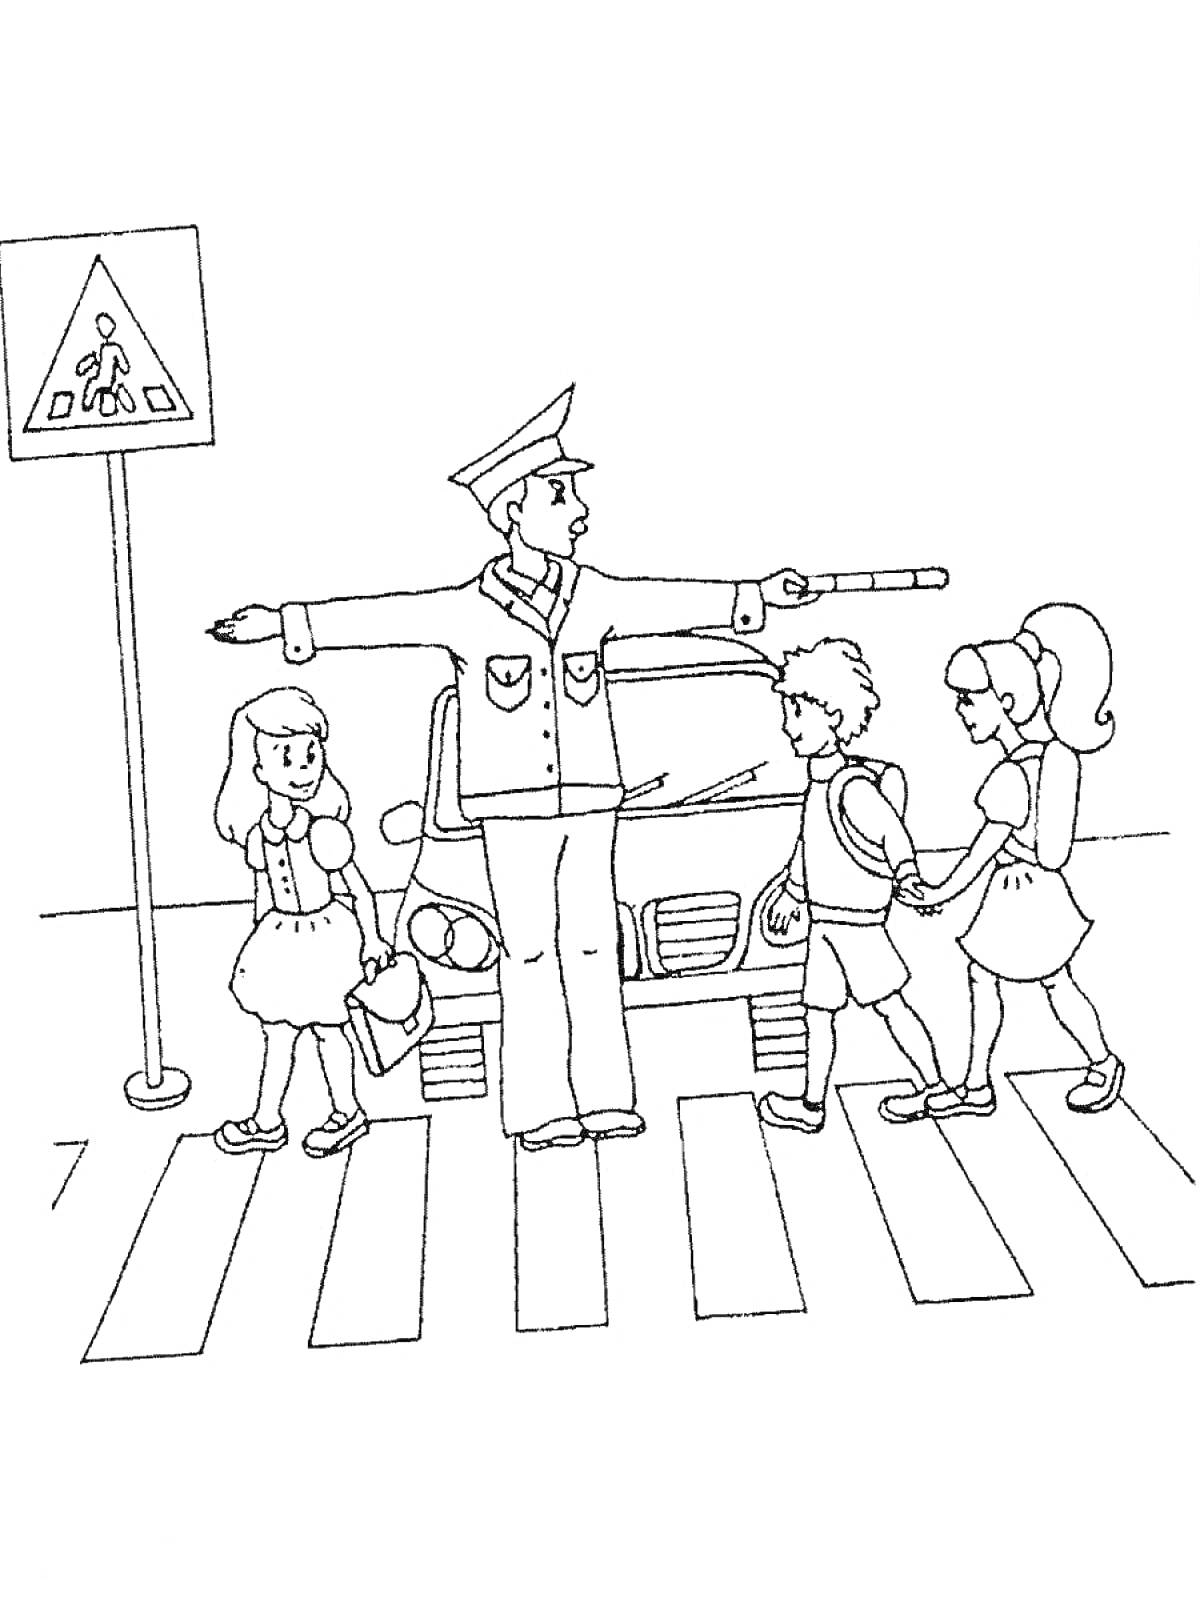 Полицейский регулирует движение на пешеходном переходе, трое детей переходят дорогу, дорожный знак на столбе